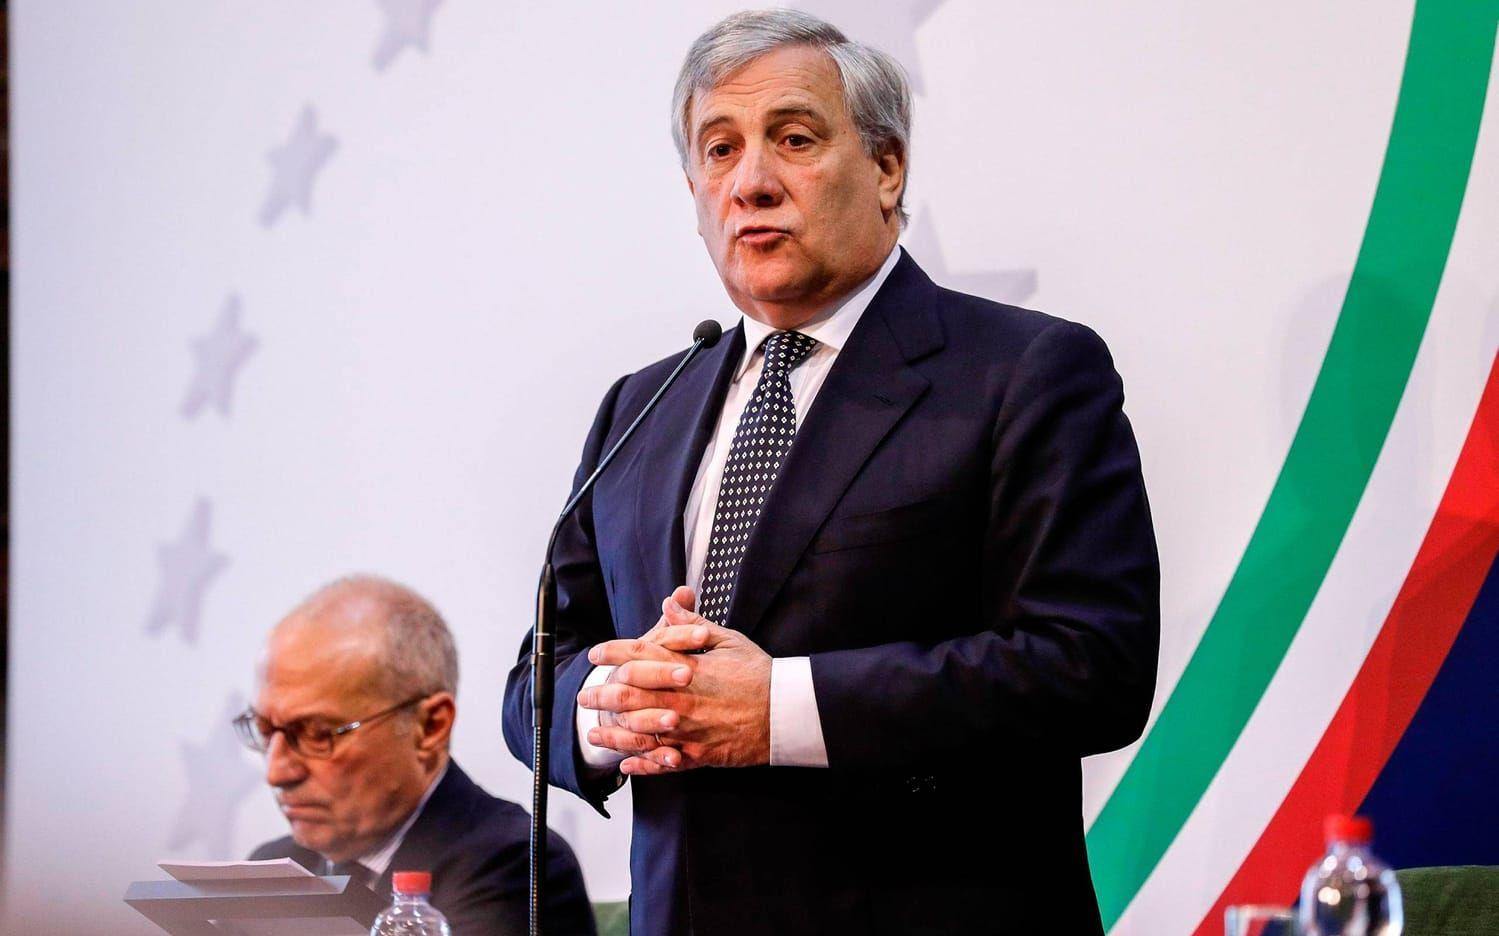 Den italienska juristen Antonioa Tajani har varit Europaparlamentets talman sedan januari i år. Han kommer därför vara en av dem som signerar dokumentet om den sociala pelaren på fredag eftermiddag. Bild: Giuseppe Lami/ANSA via AP